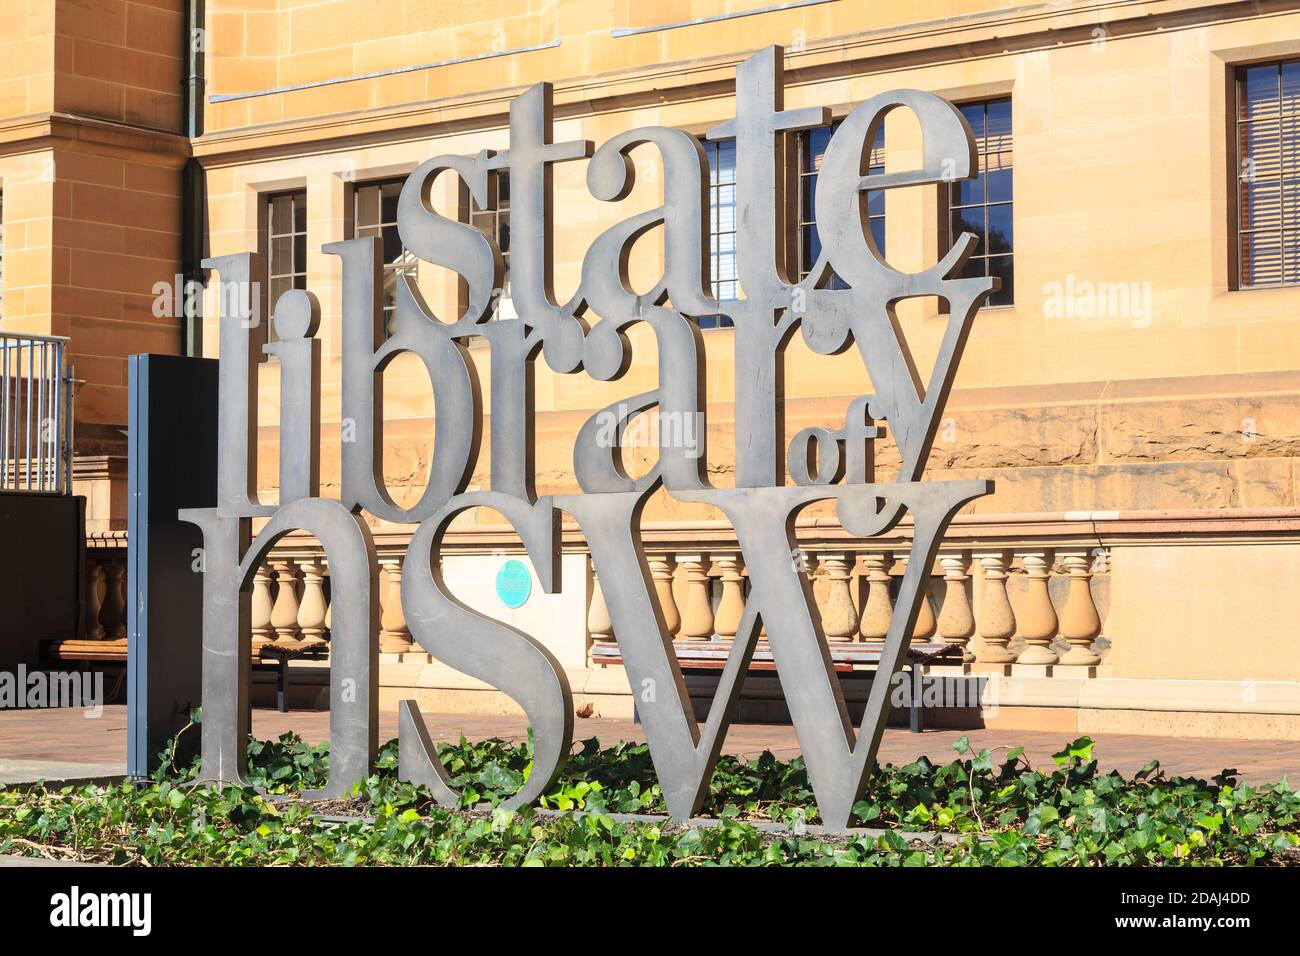 Sculpted Metal "States Library of NSW" (nuovo Galles del Sud) fuori dall'edificio. Sydney, Australia Foto Stock